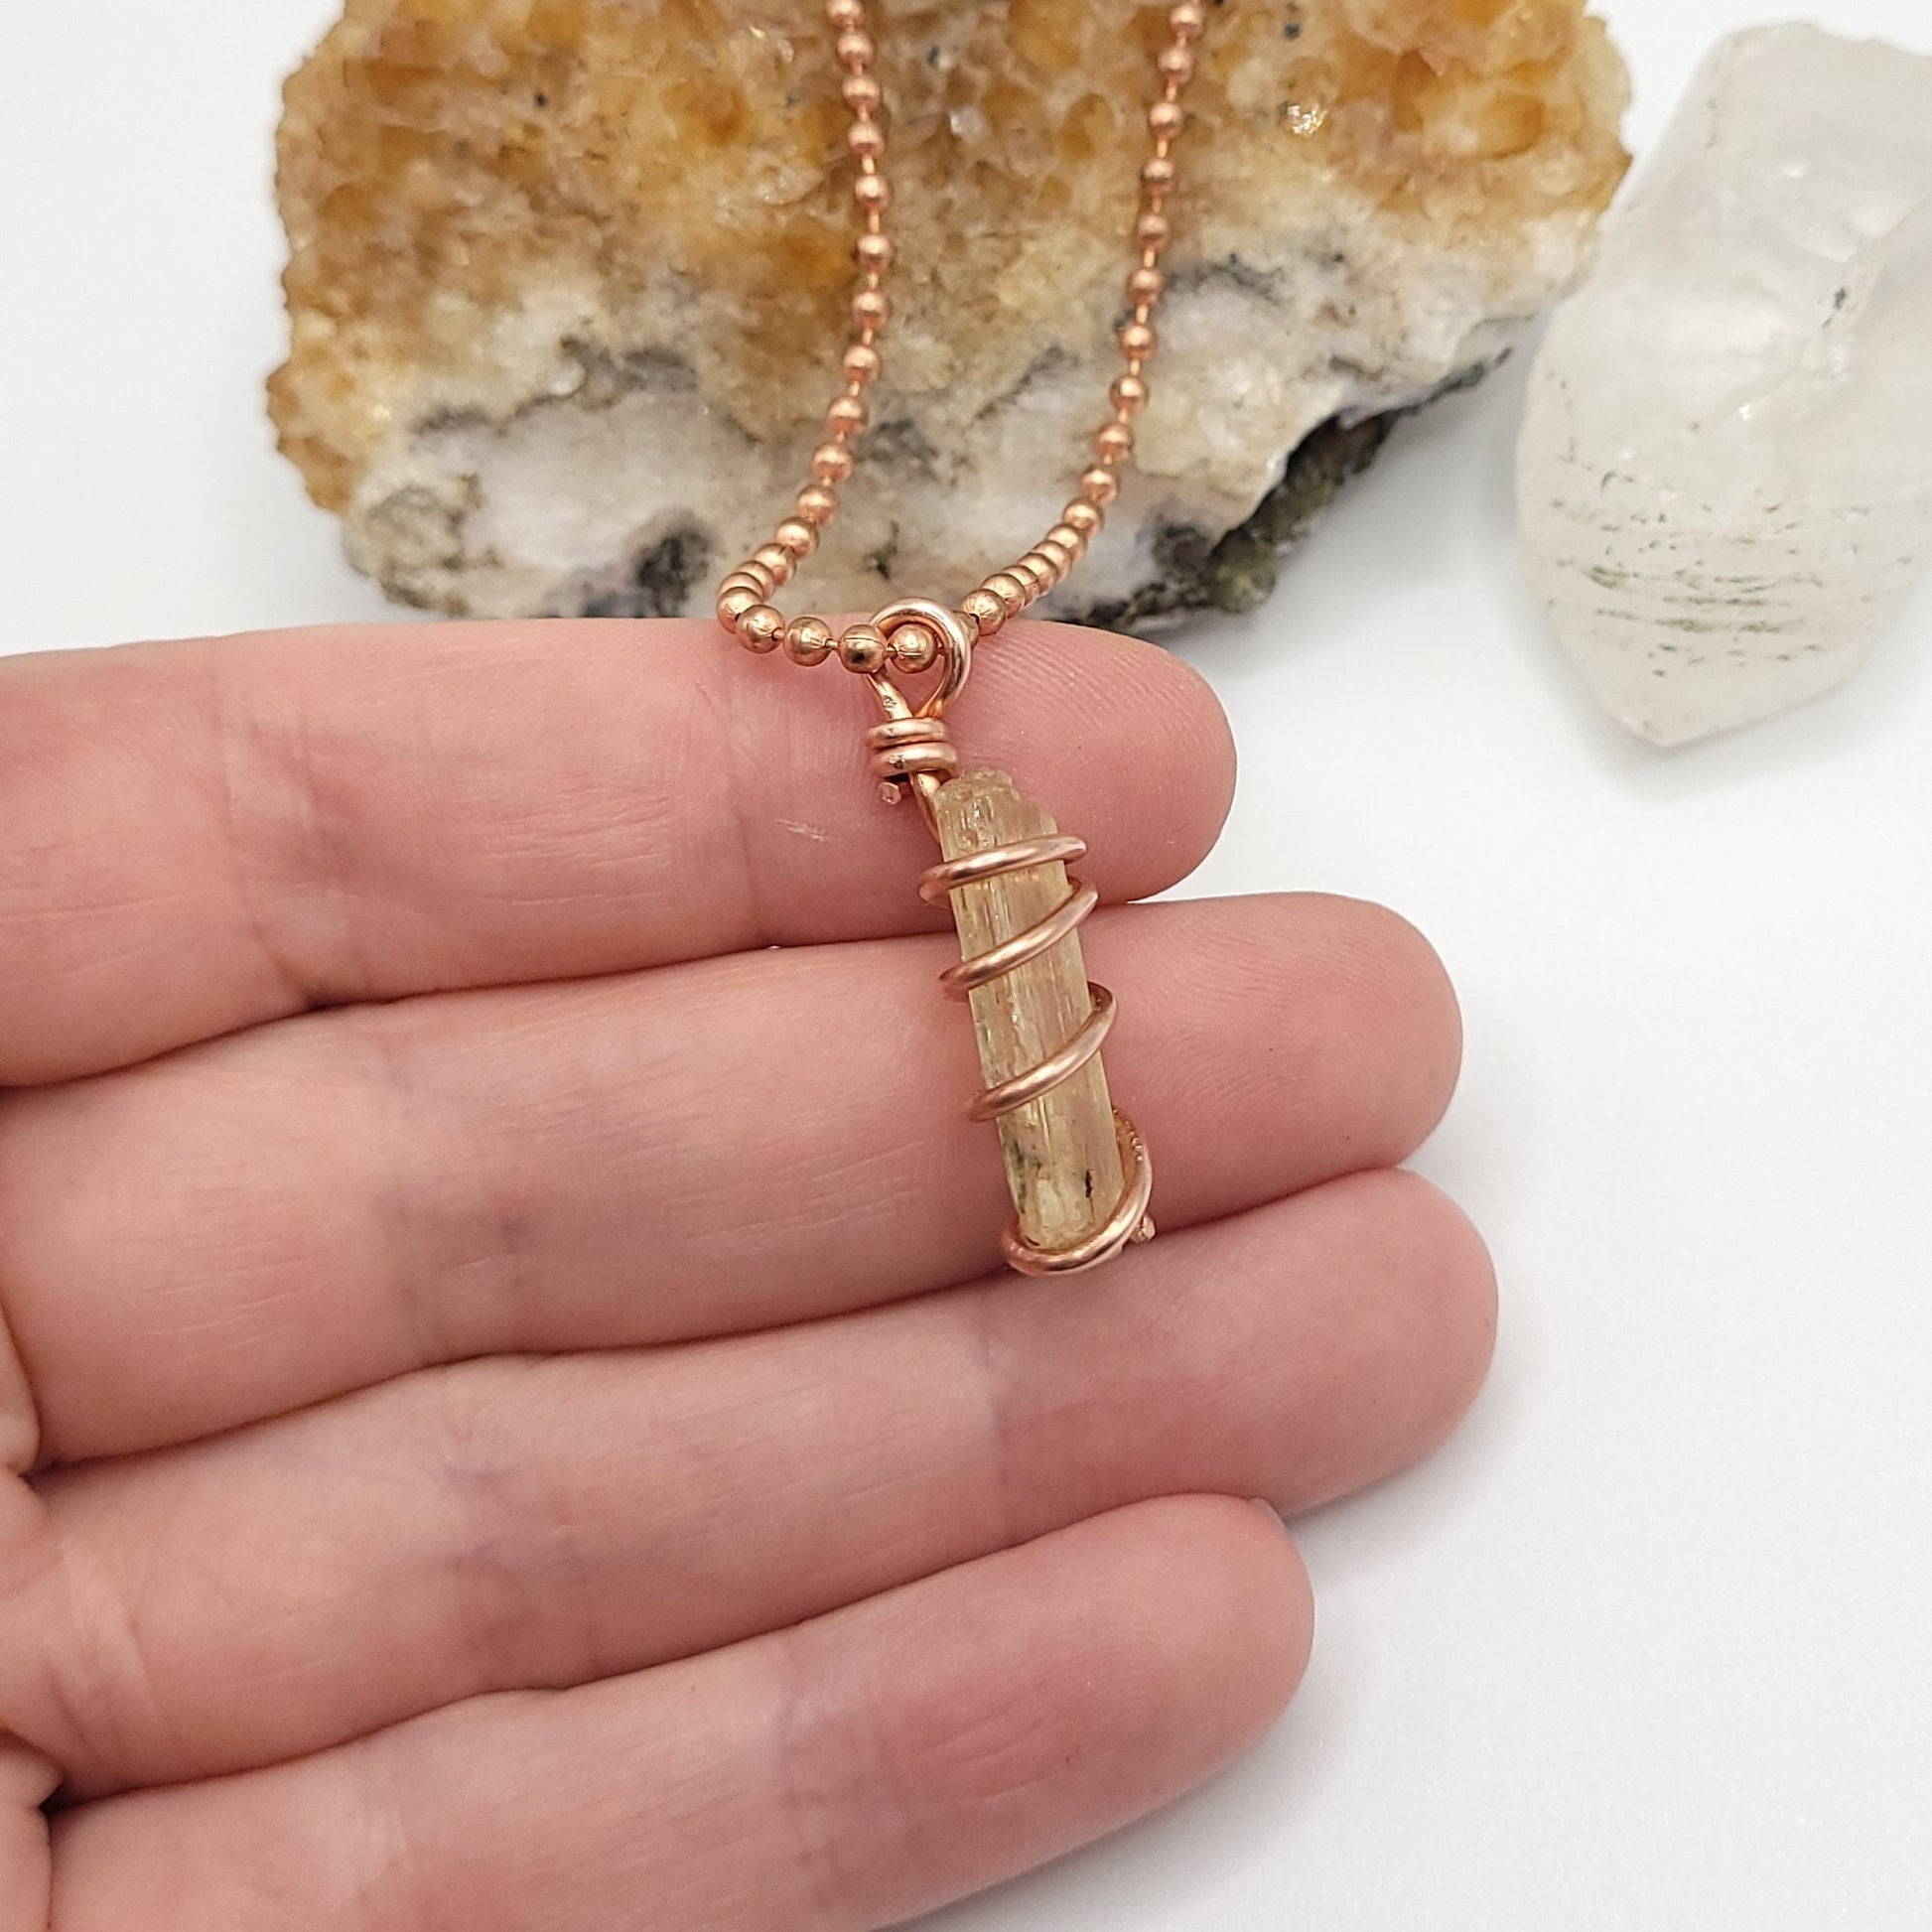 Scapolite Necklace, Copper Wire Wrapped Scapolite Pendant